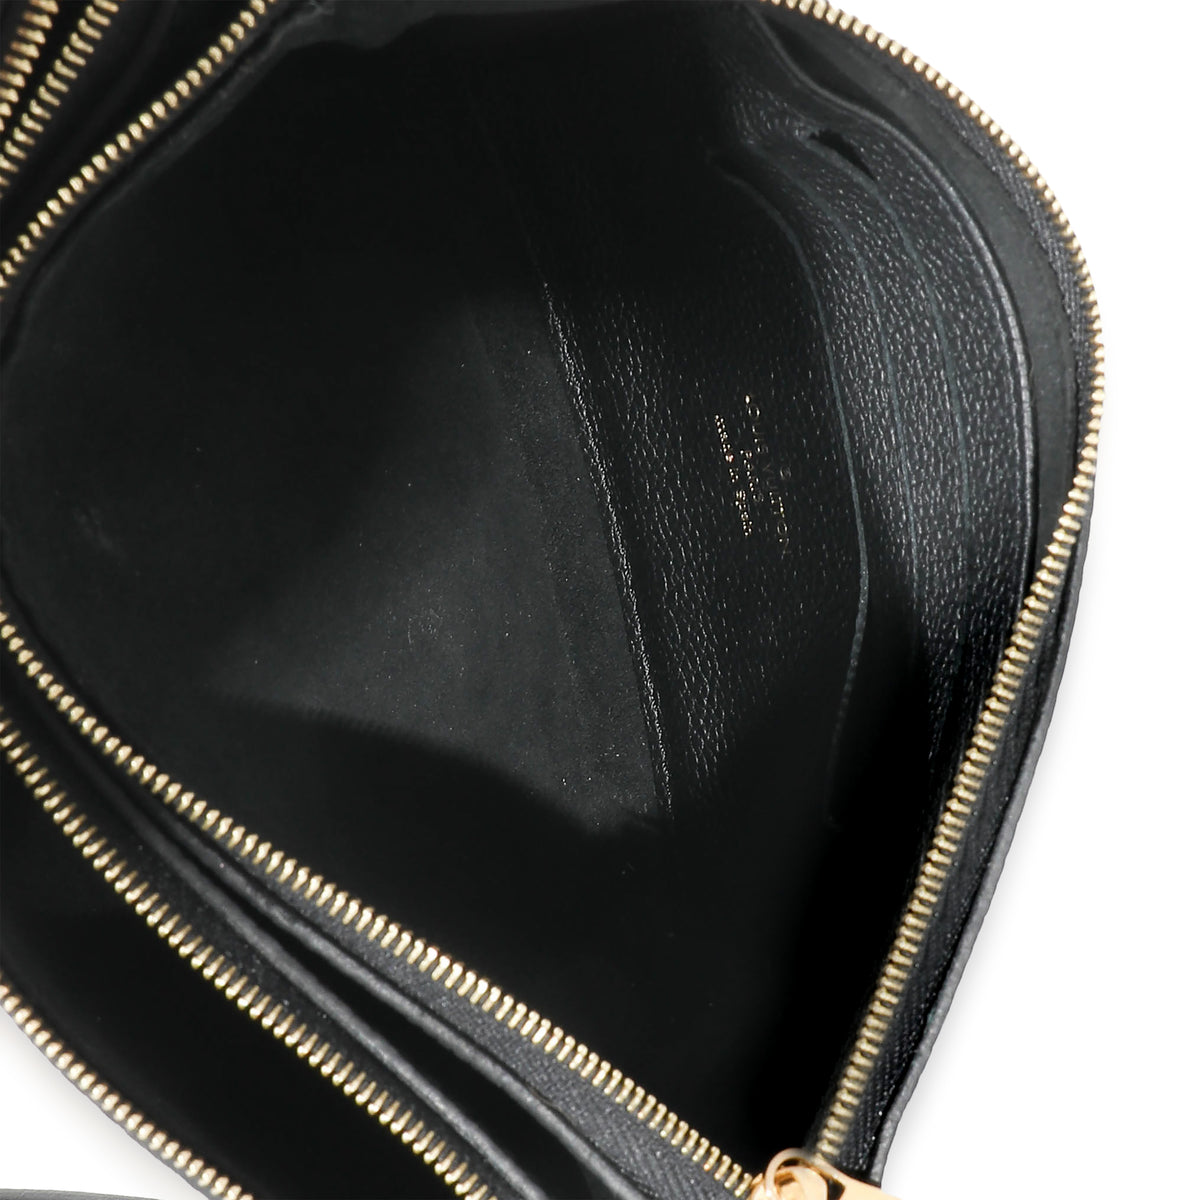 Louis Vuitton Black Monogram Empreinte Felicie Pochette, myGemma, SG